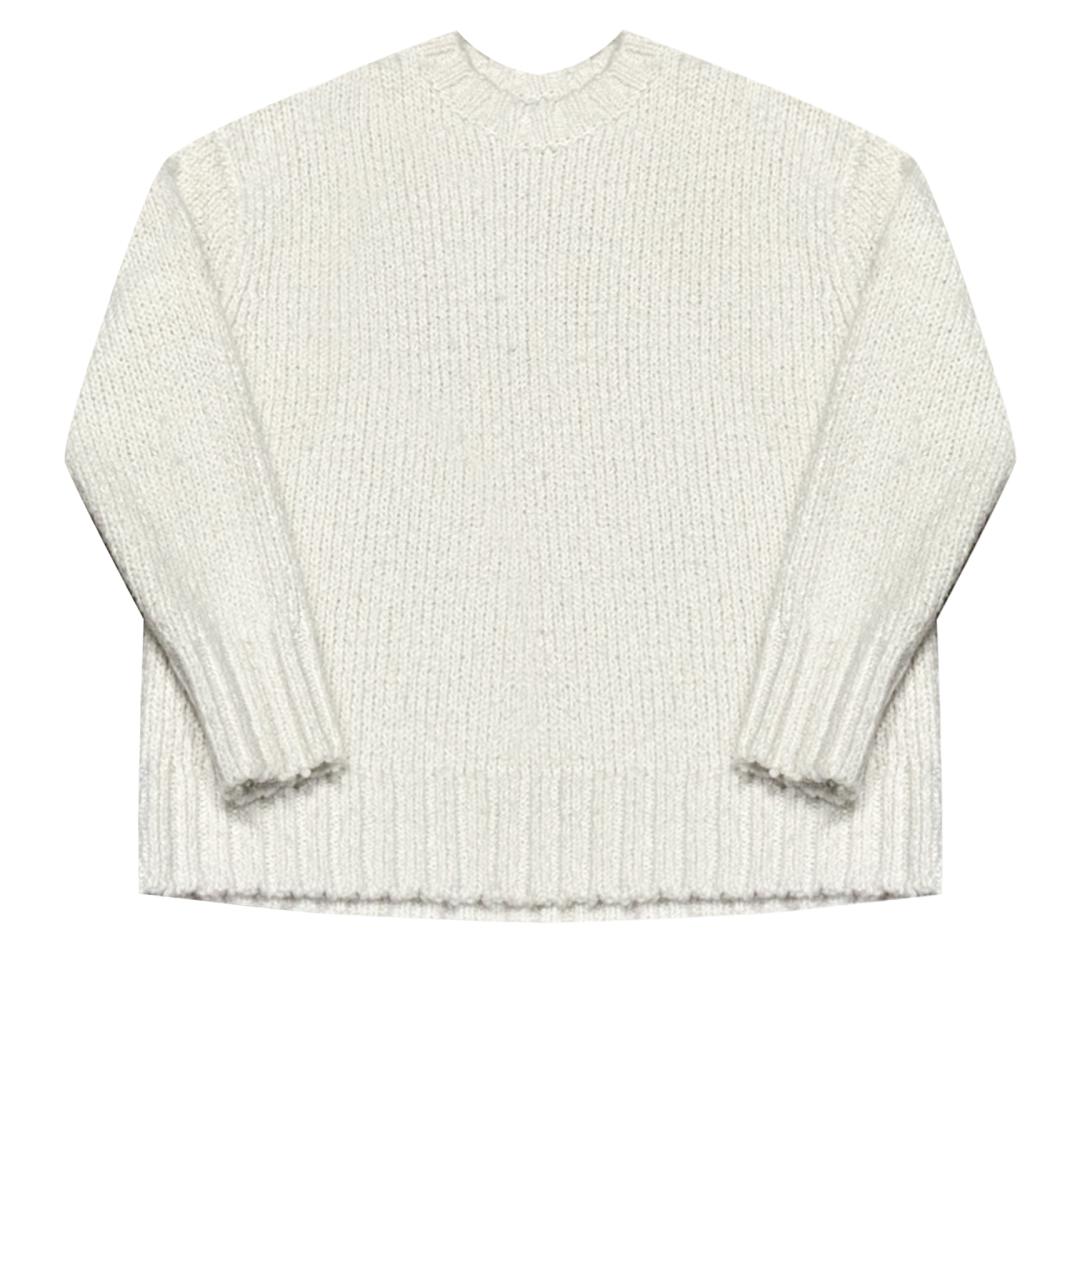 12 STOREEZ Белый шерстяной джемпер / свитер, фото 1